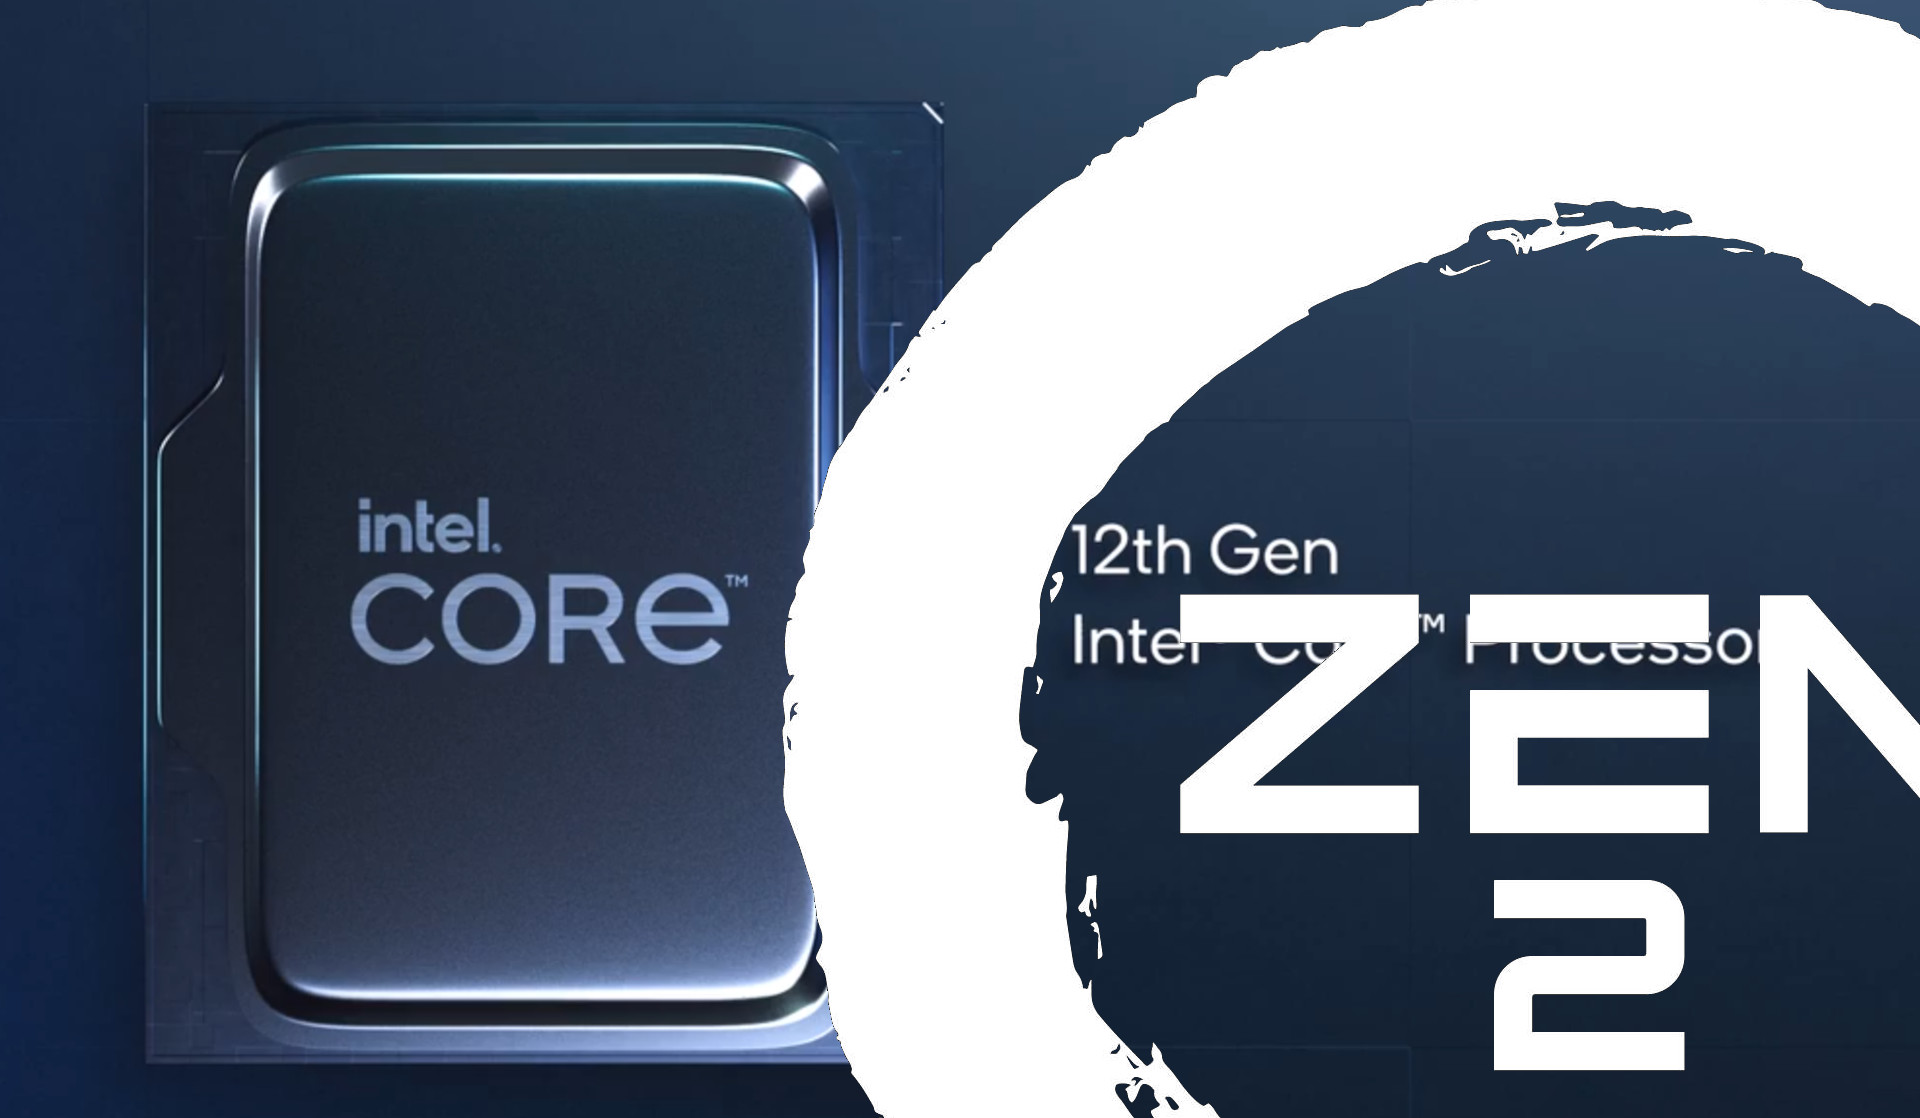 Az AMD szerint bőven elég lesz a jó öreg Zen2 architektúra is.